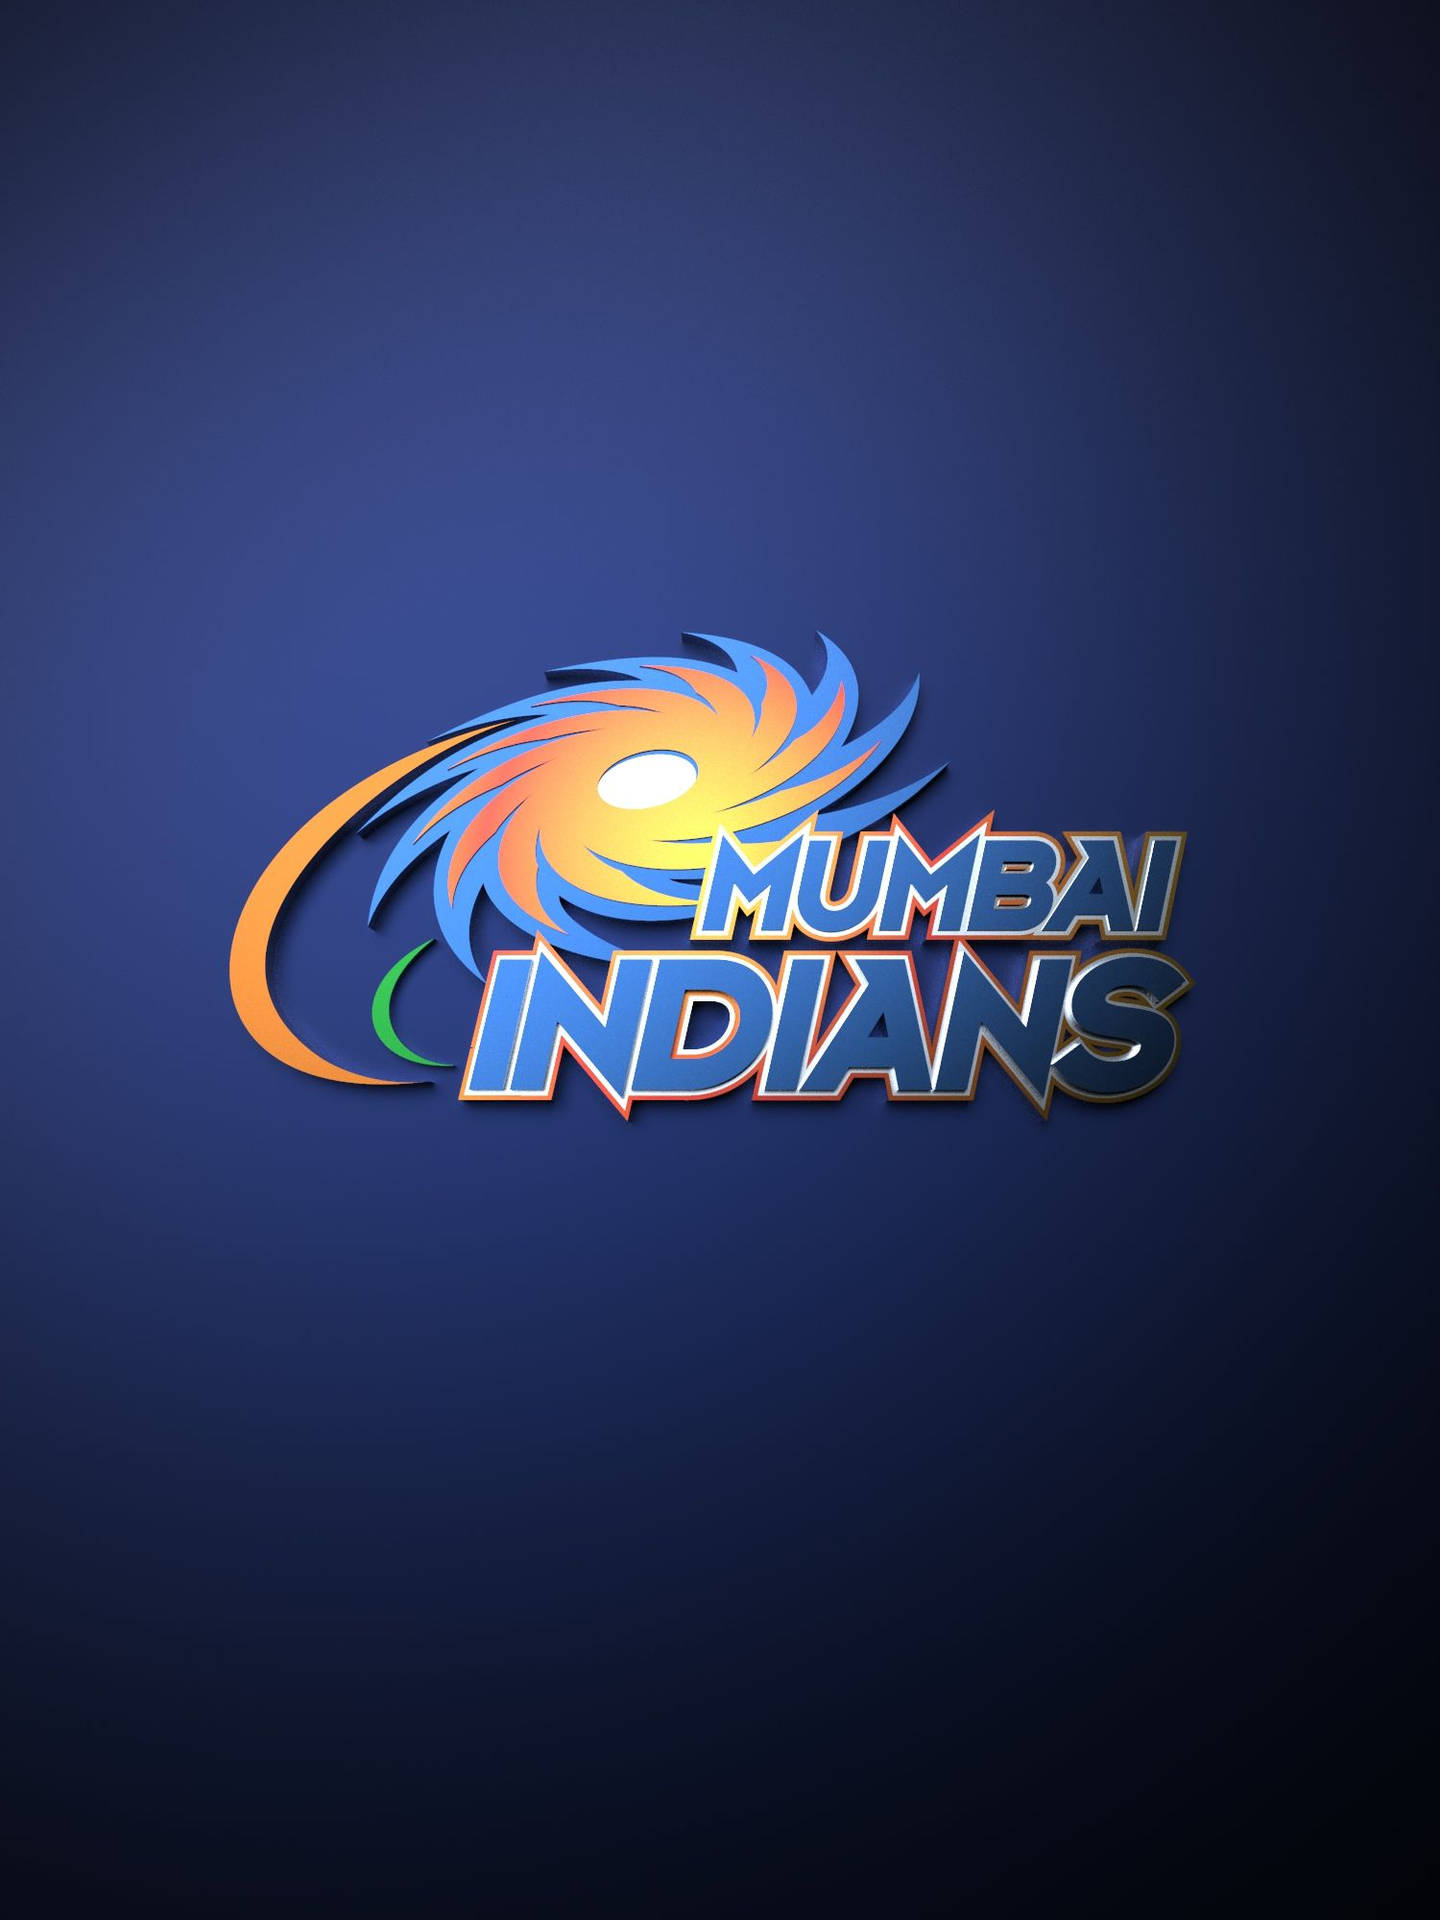 Mumbai Indians Stylized Lettering Logo Background